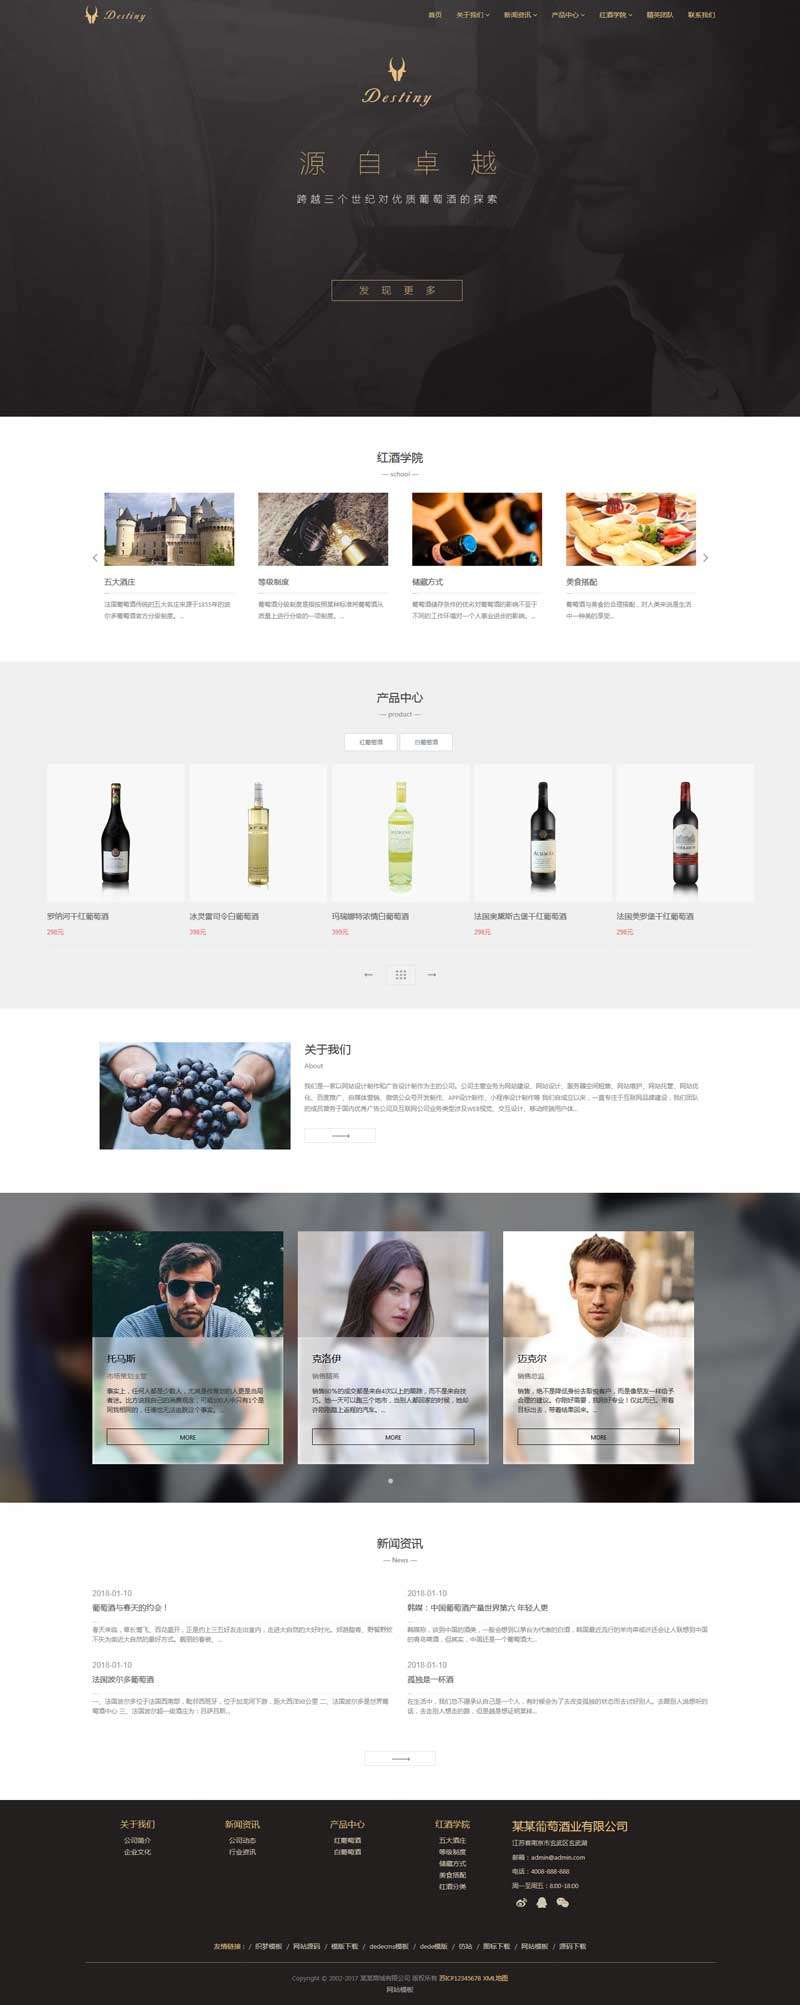 葡萄酒业贸易公司网站Wordpress模板带手机端截图